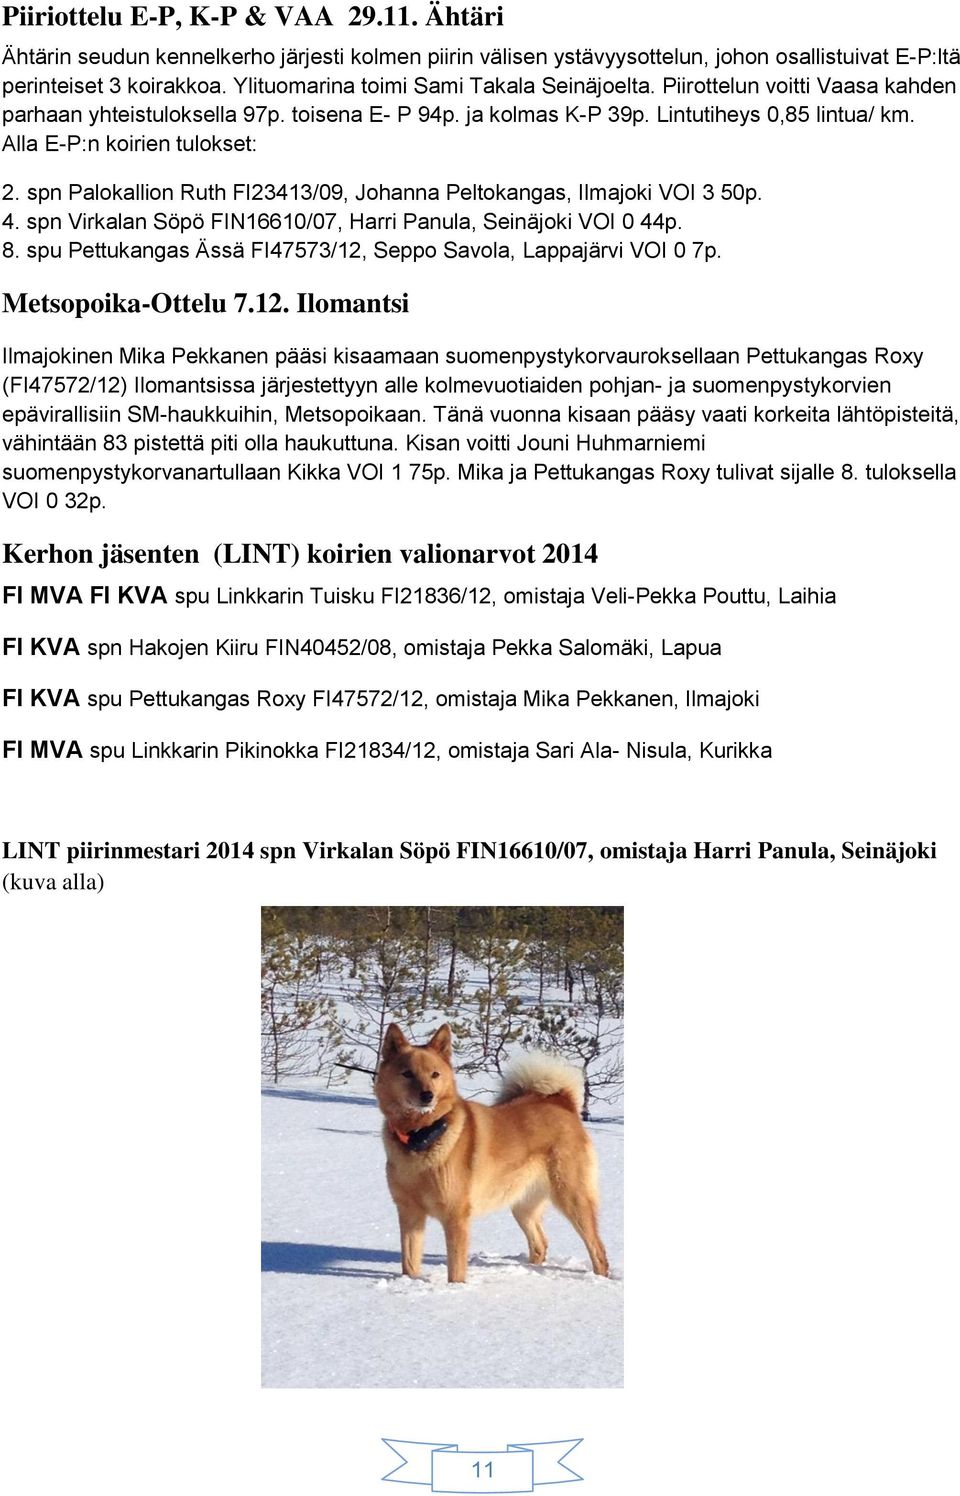 Alla E-P:n koirien tulokset: 2. spn Palokallion Ruth FI23413/09, Johanna Peltokangas, Ilmajoki VOI 3 50p. 4. spn Virkalan Söpö FIN16610/07, Harri Panula, Seinäjoki VOI 0 44p. 8.